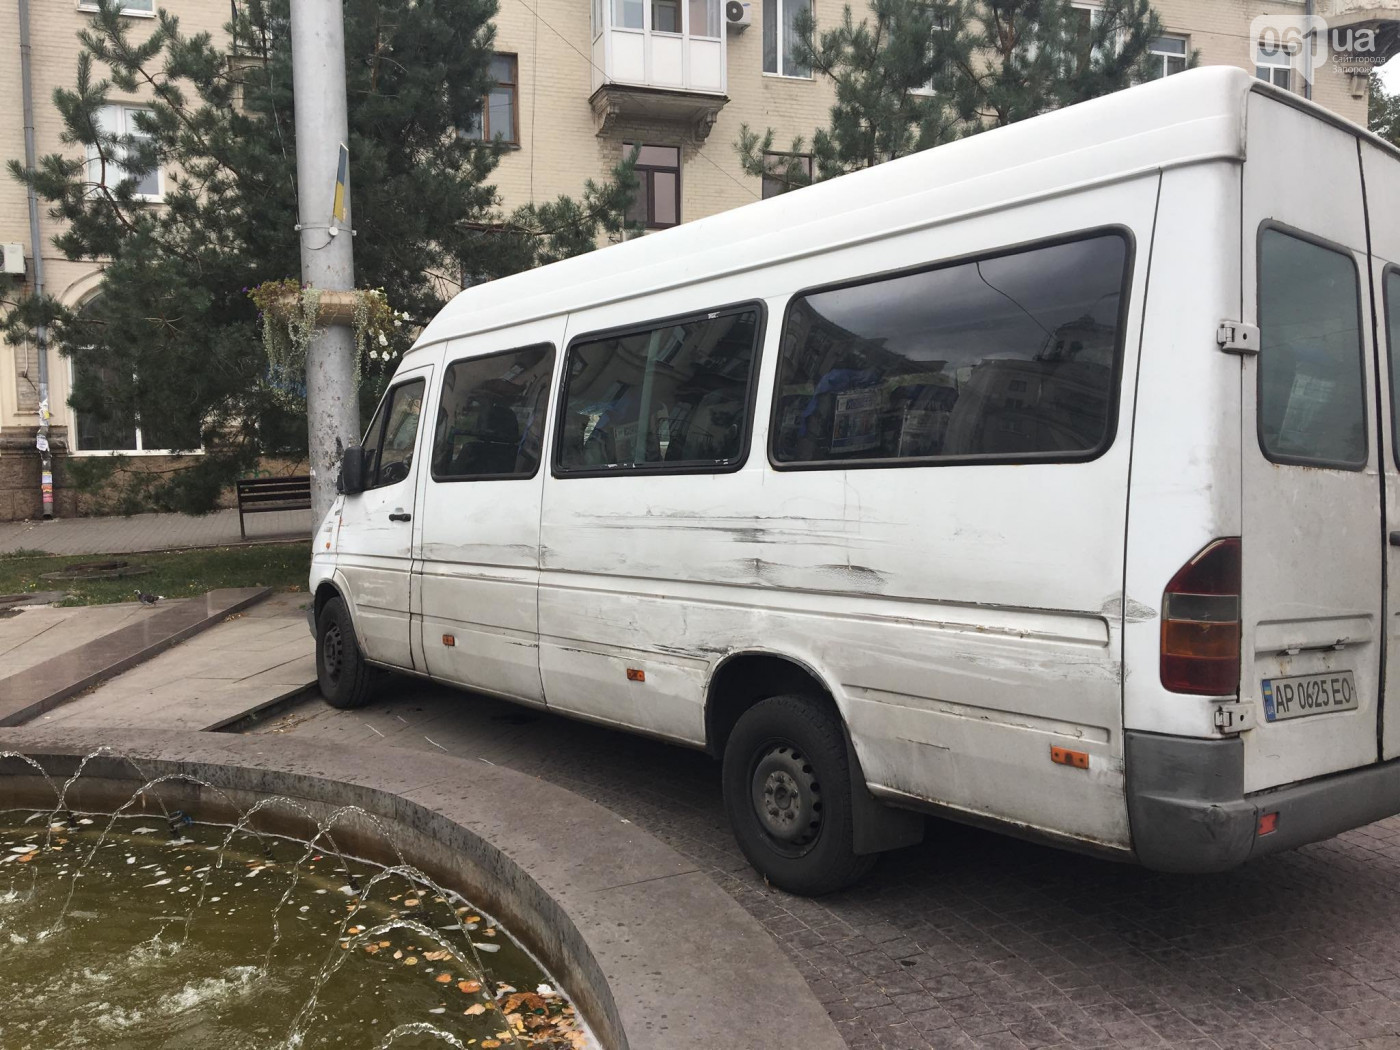 “Авария на 12 Апреля”: в сети появилось видео момента ДТП в Запорожье (ВИДЕО)